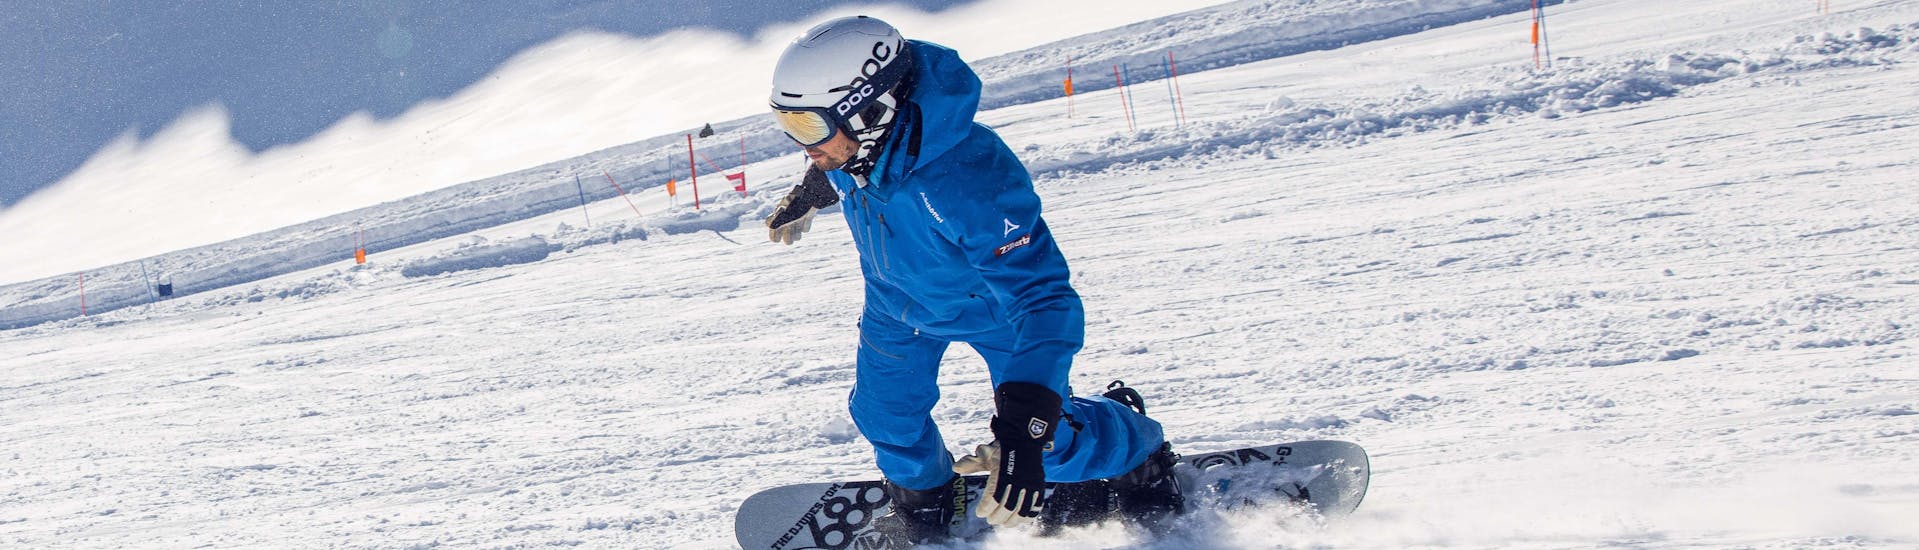 Clases de snowboard privadas a partir de 5 años para todos los niveles con Ski School Skipower Finkenberg.